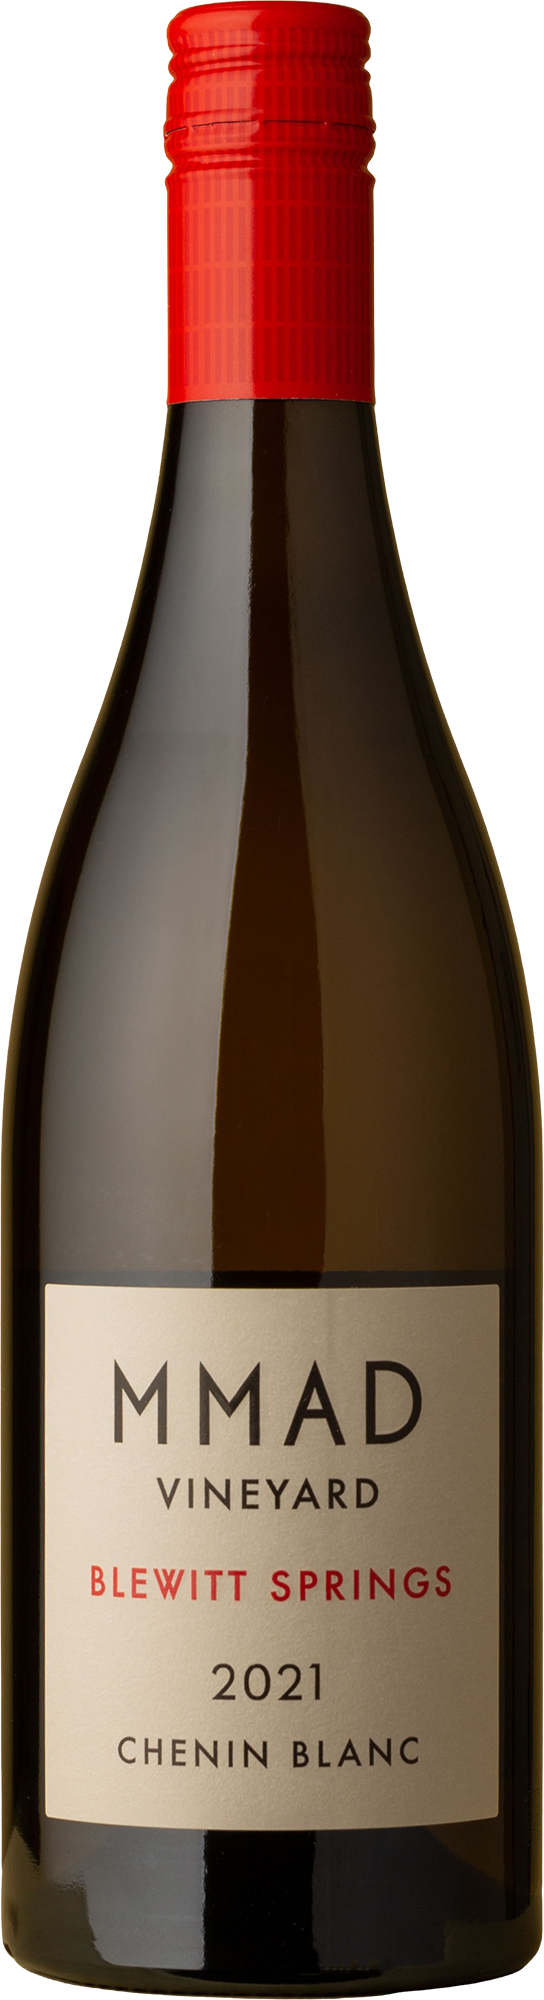 MMAD - Blewitt Springs Chenin Blanc 2021 White Wine